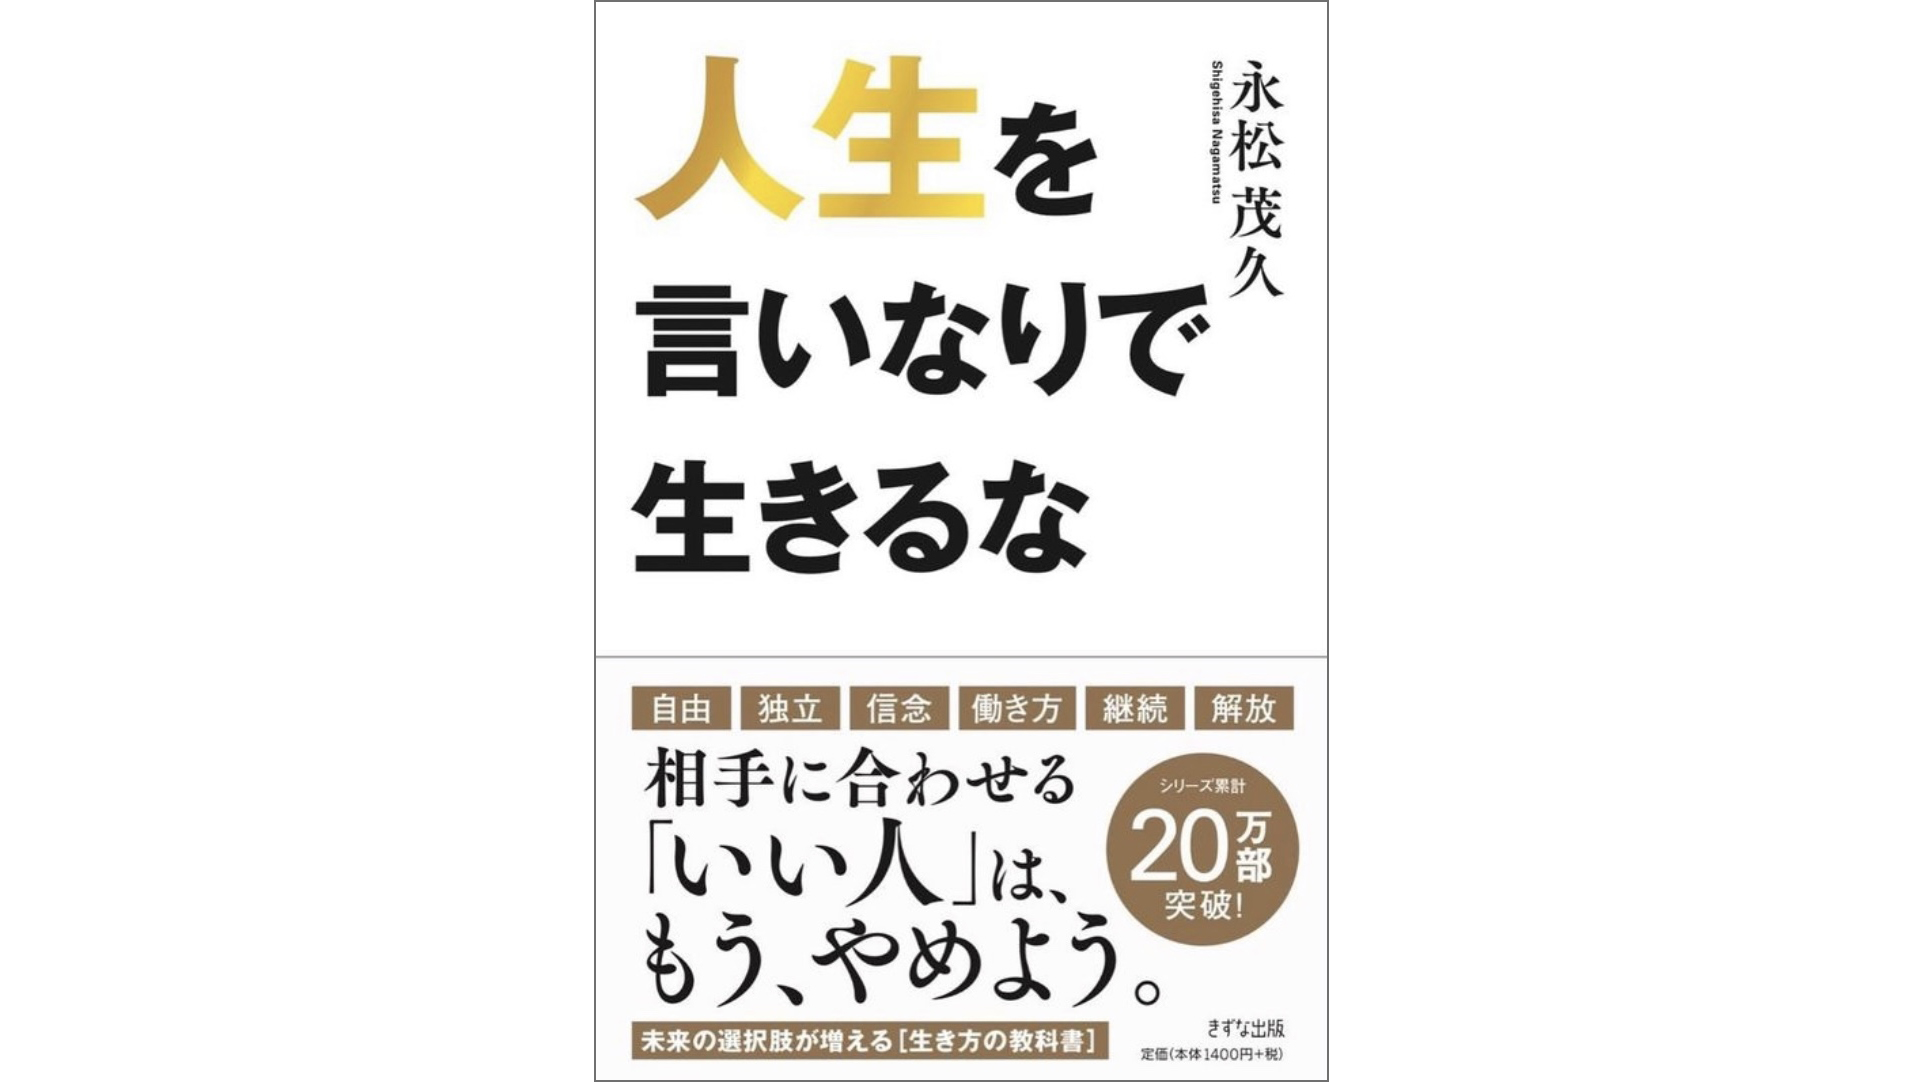 永松茂久(ながまつしげひさ)さんが書籍『人生を言いなりで生きるな』を出版